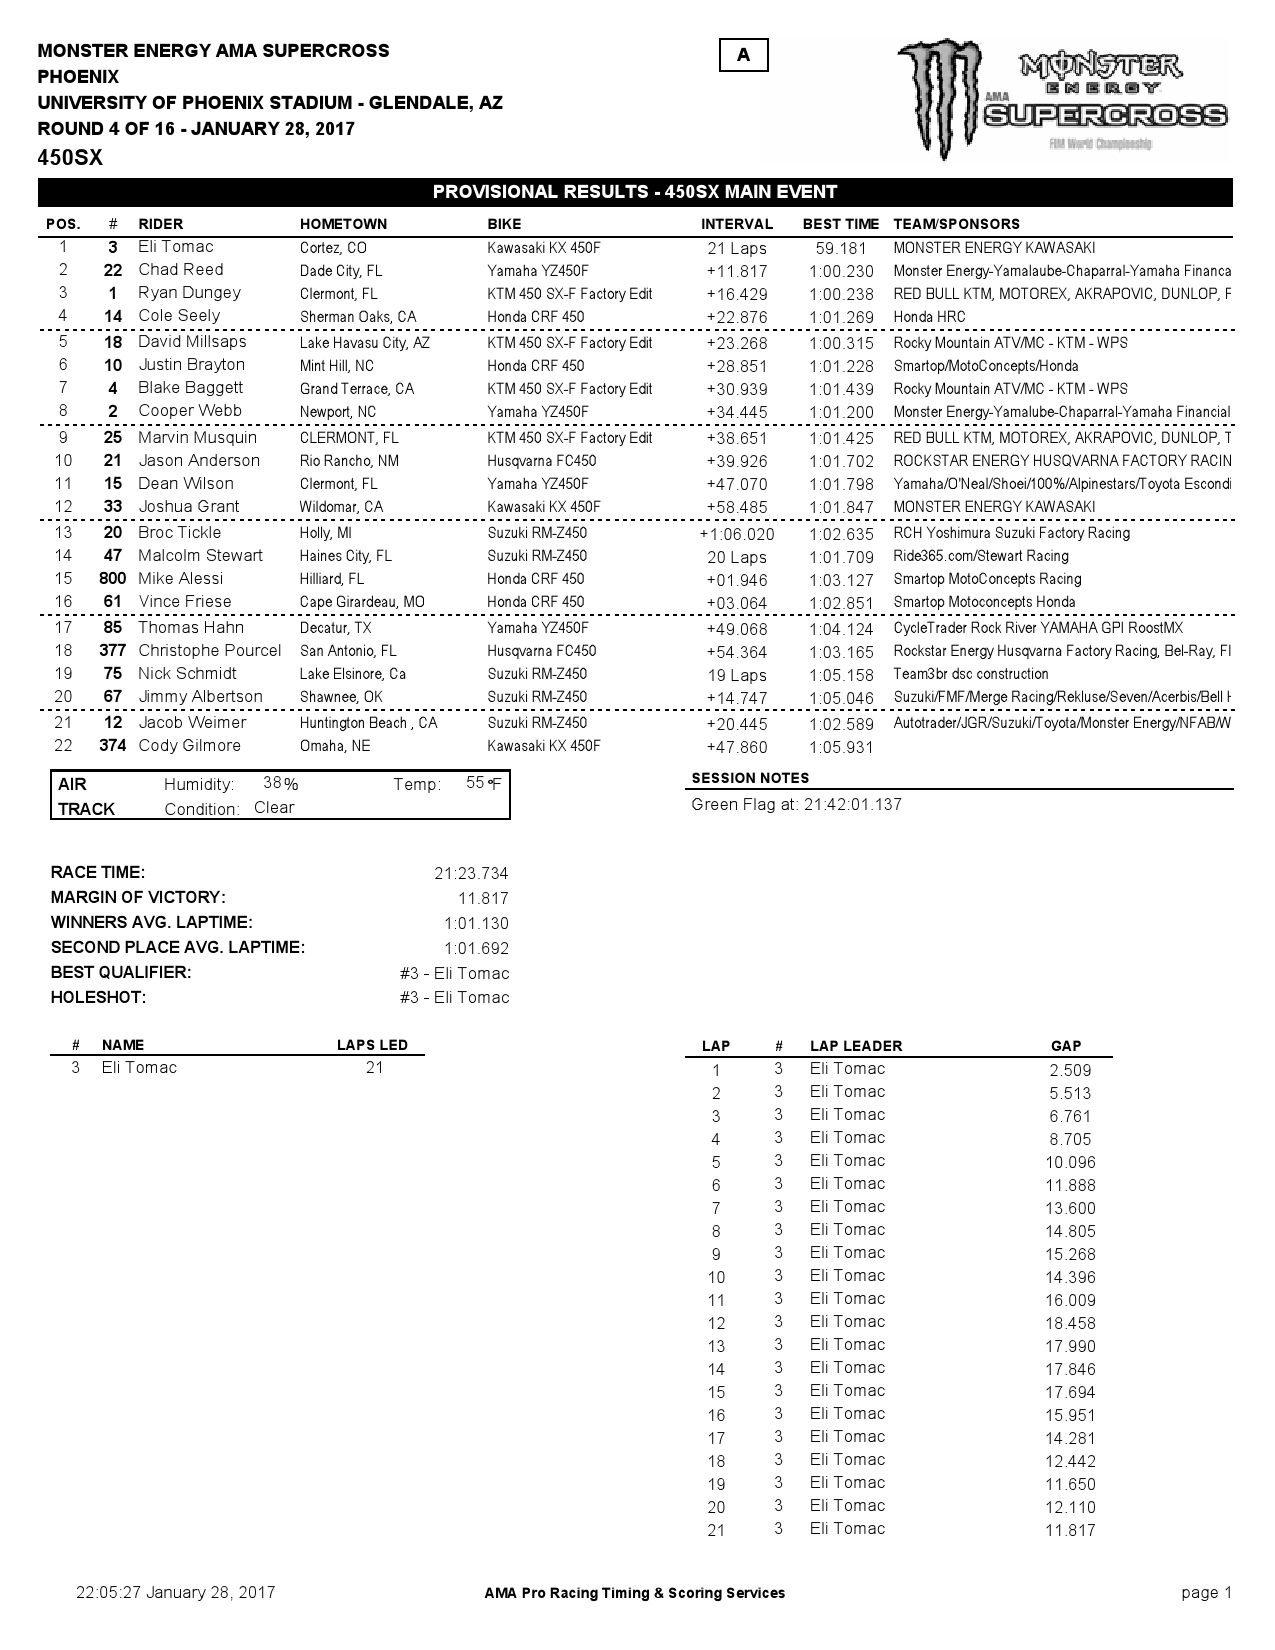 Результаты 4-го этапа Чемпионата Мира/AMA 450SX- Phoenix